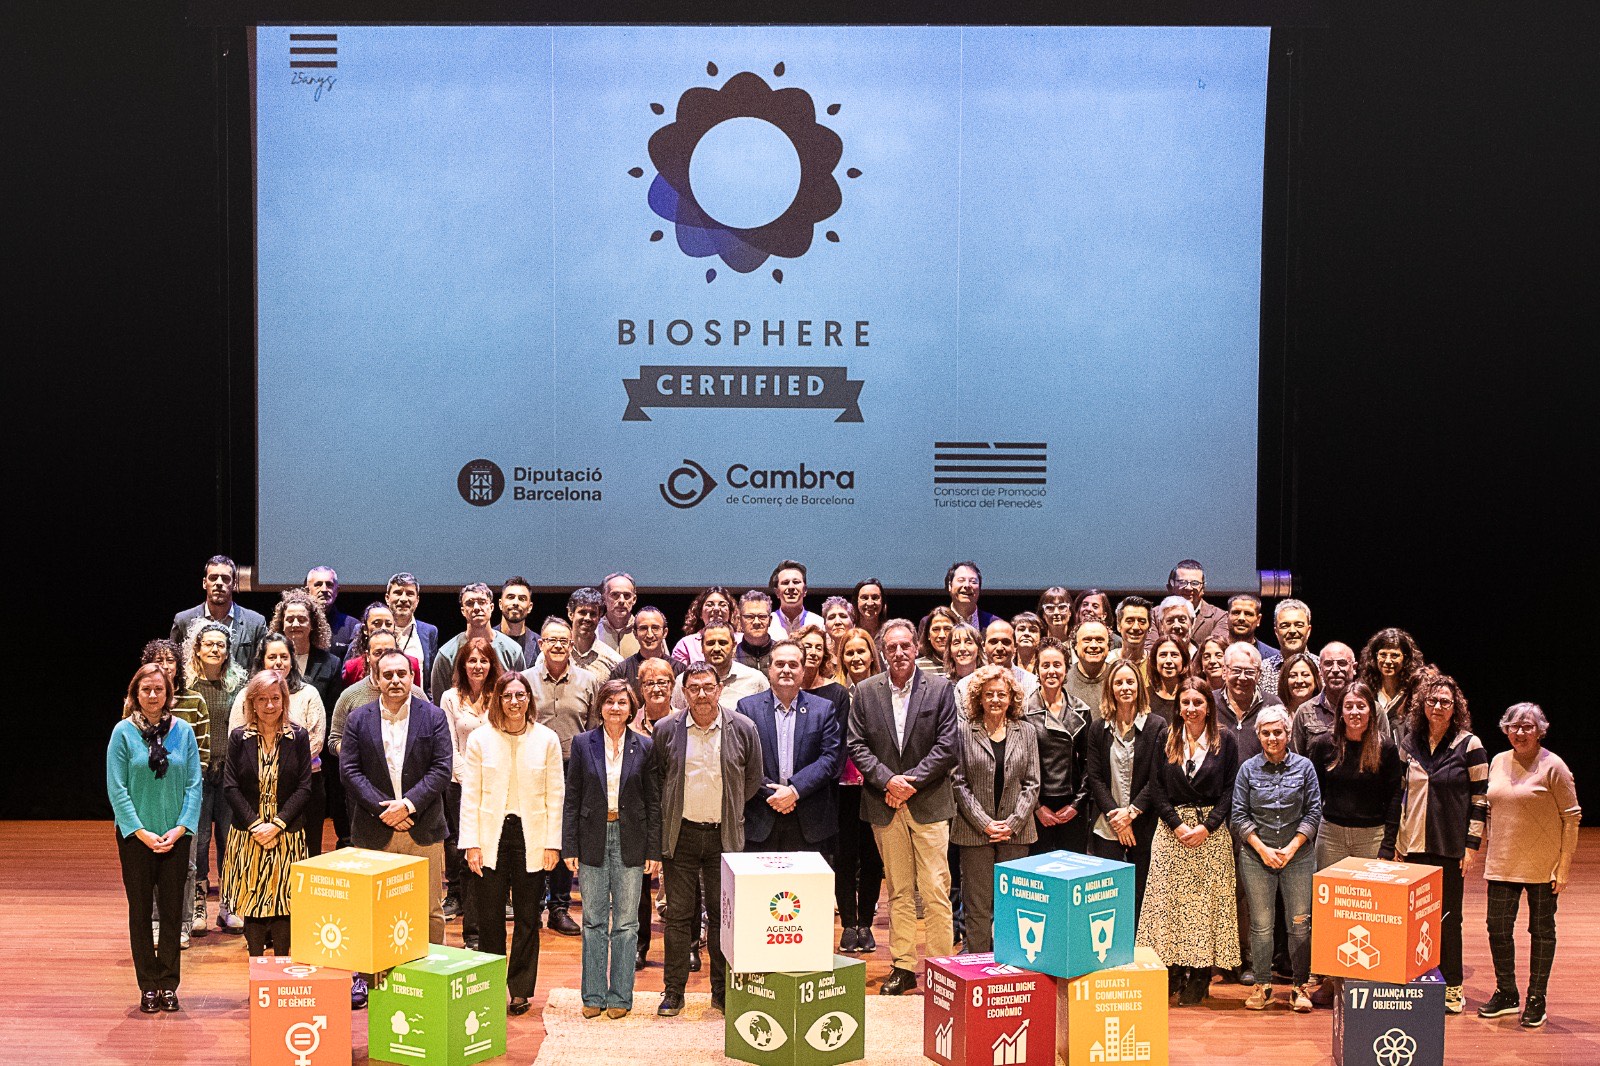 Rebem el segell Biosphere pel nostre compromís amb la sostenibilitat